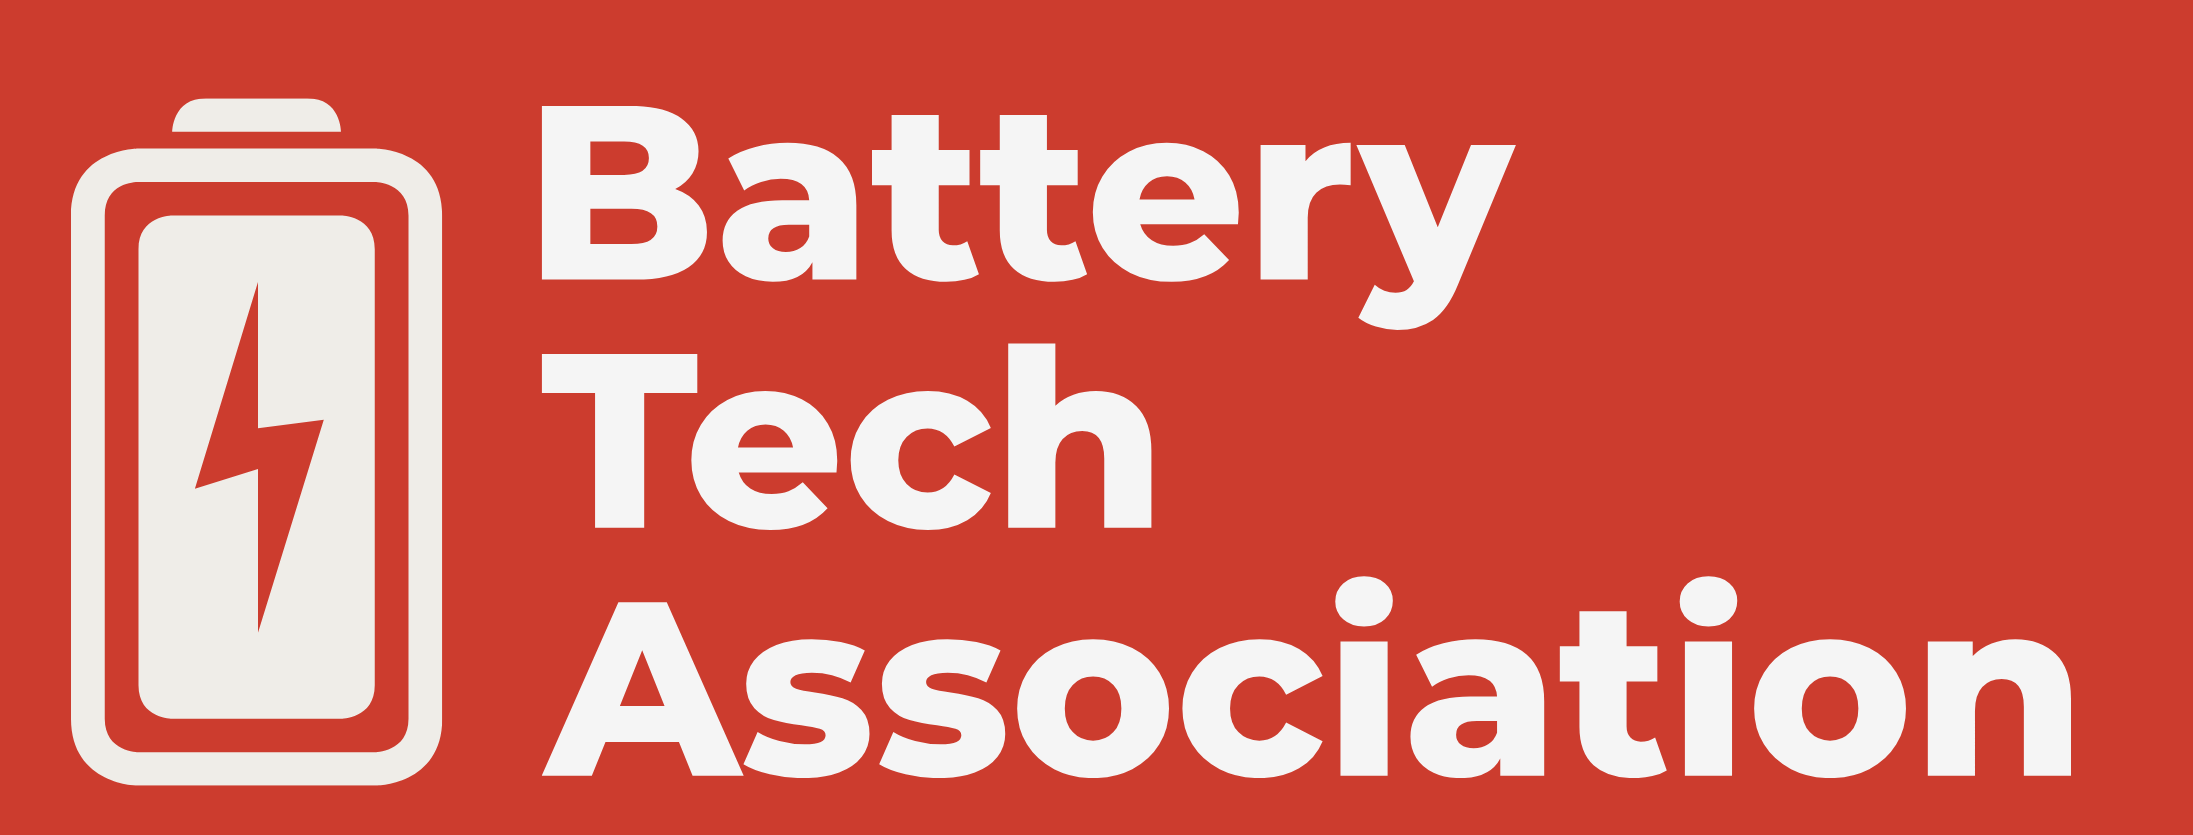 Battery Tech Association